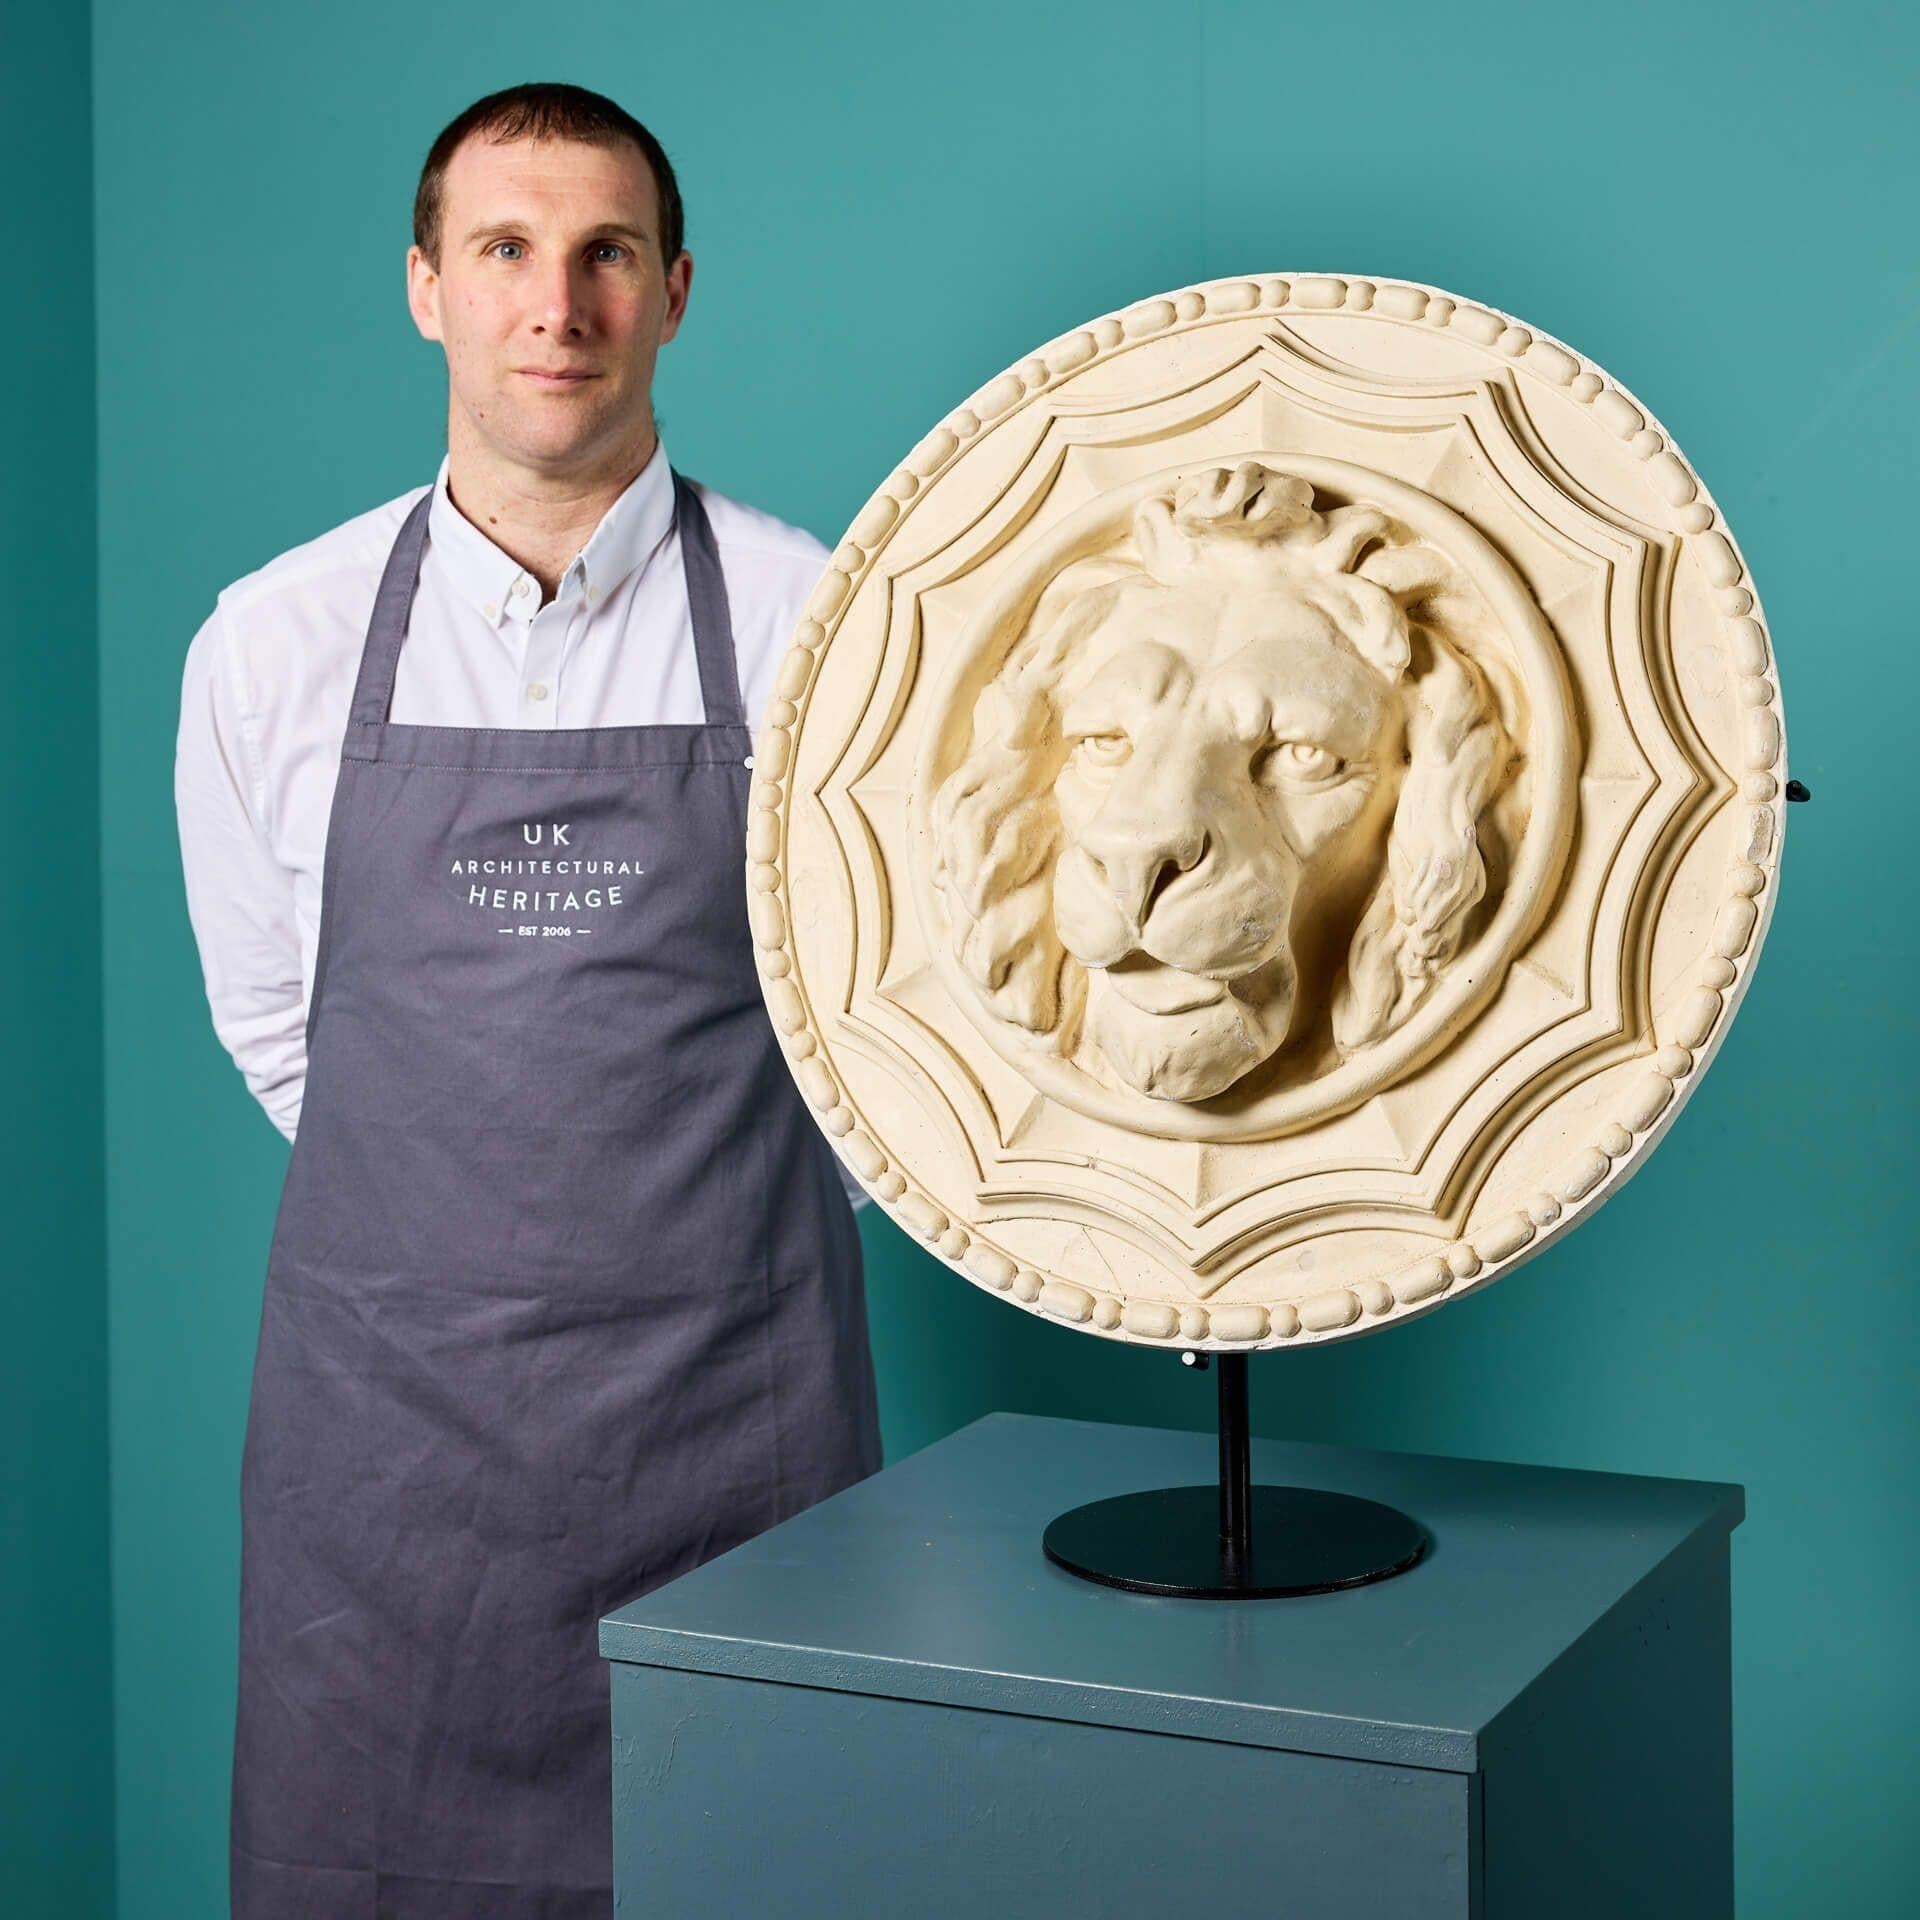 Tête de lion en plâtre anglaise du début du XXe siècle, centrée sur un grand rondeau en plâtre décoré d'une bordure de perles et de rouleaux en haut relief. Peut-être utilisé autrefois comme élément d'une frise à l'intérieur d'un bâtiment